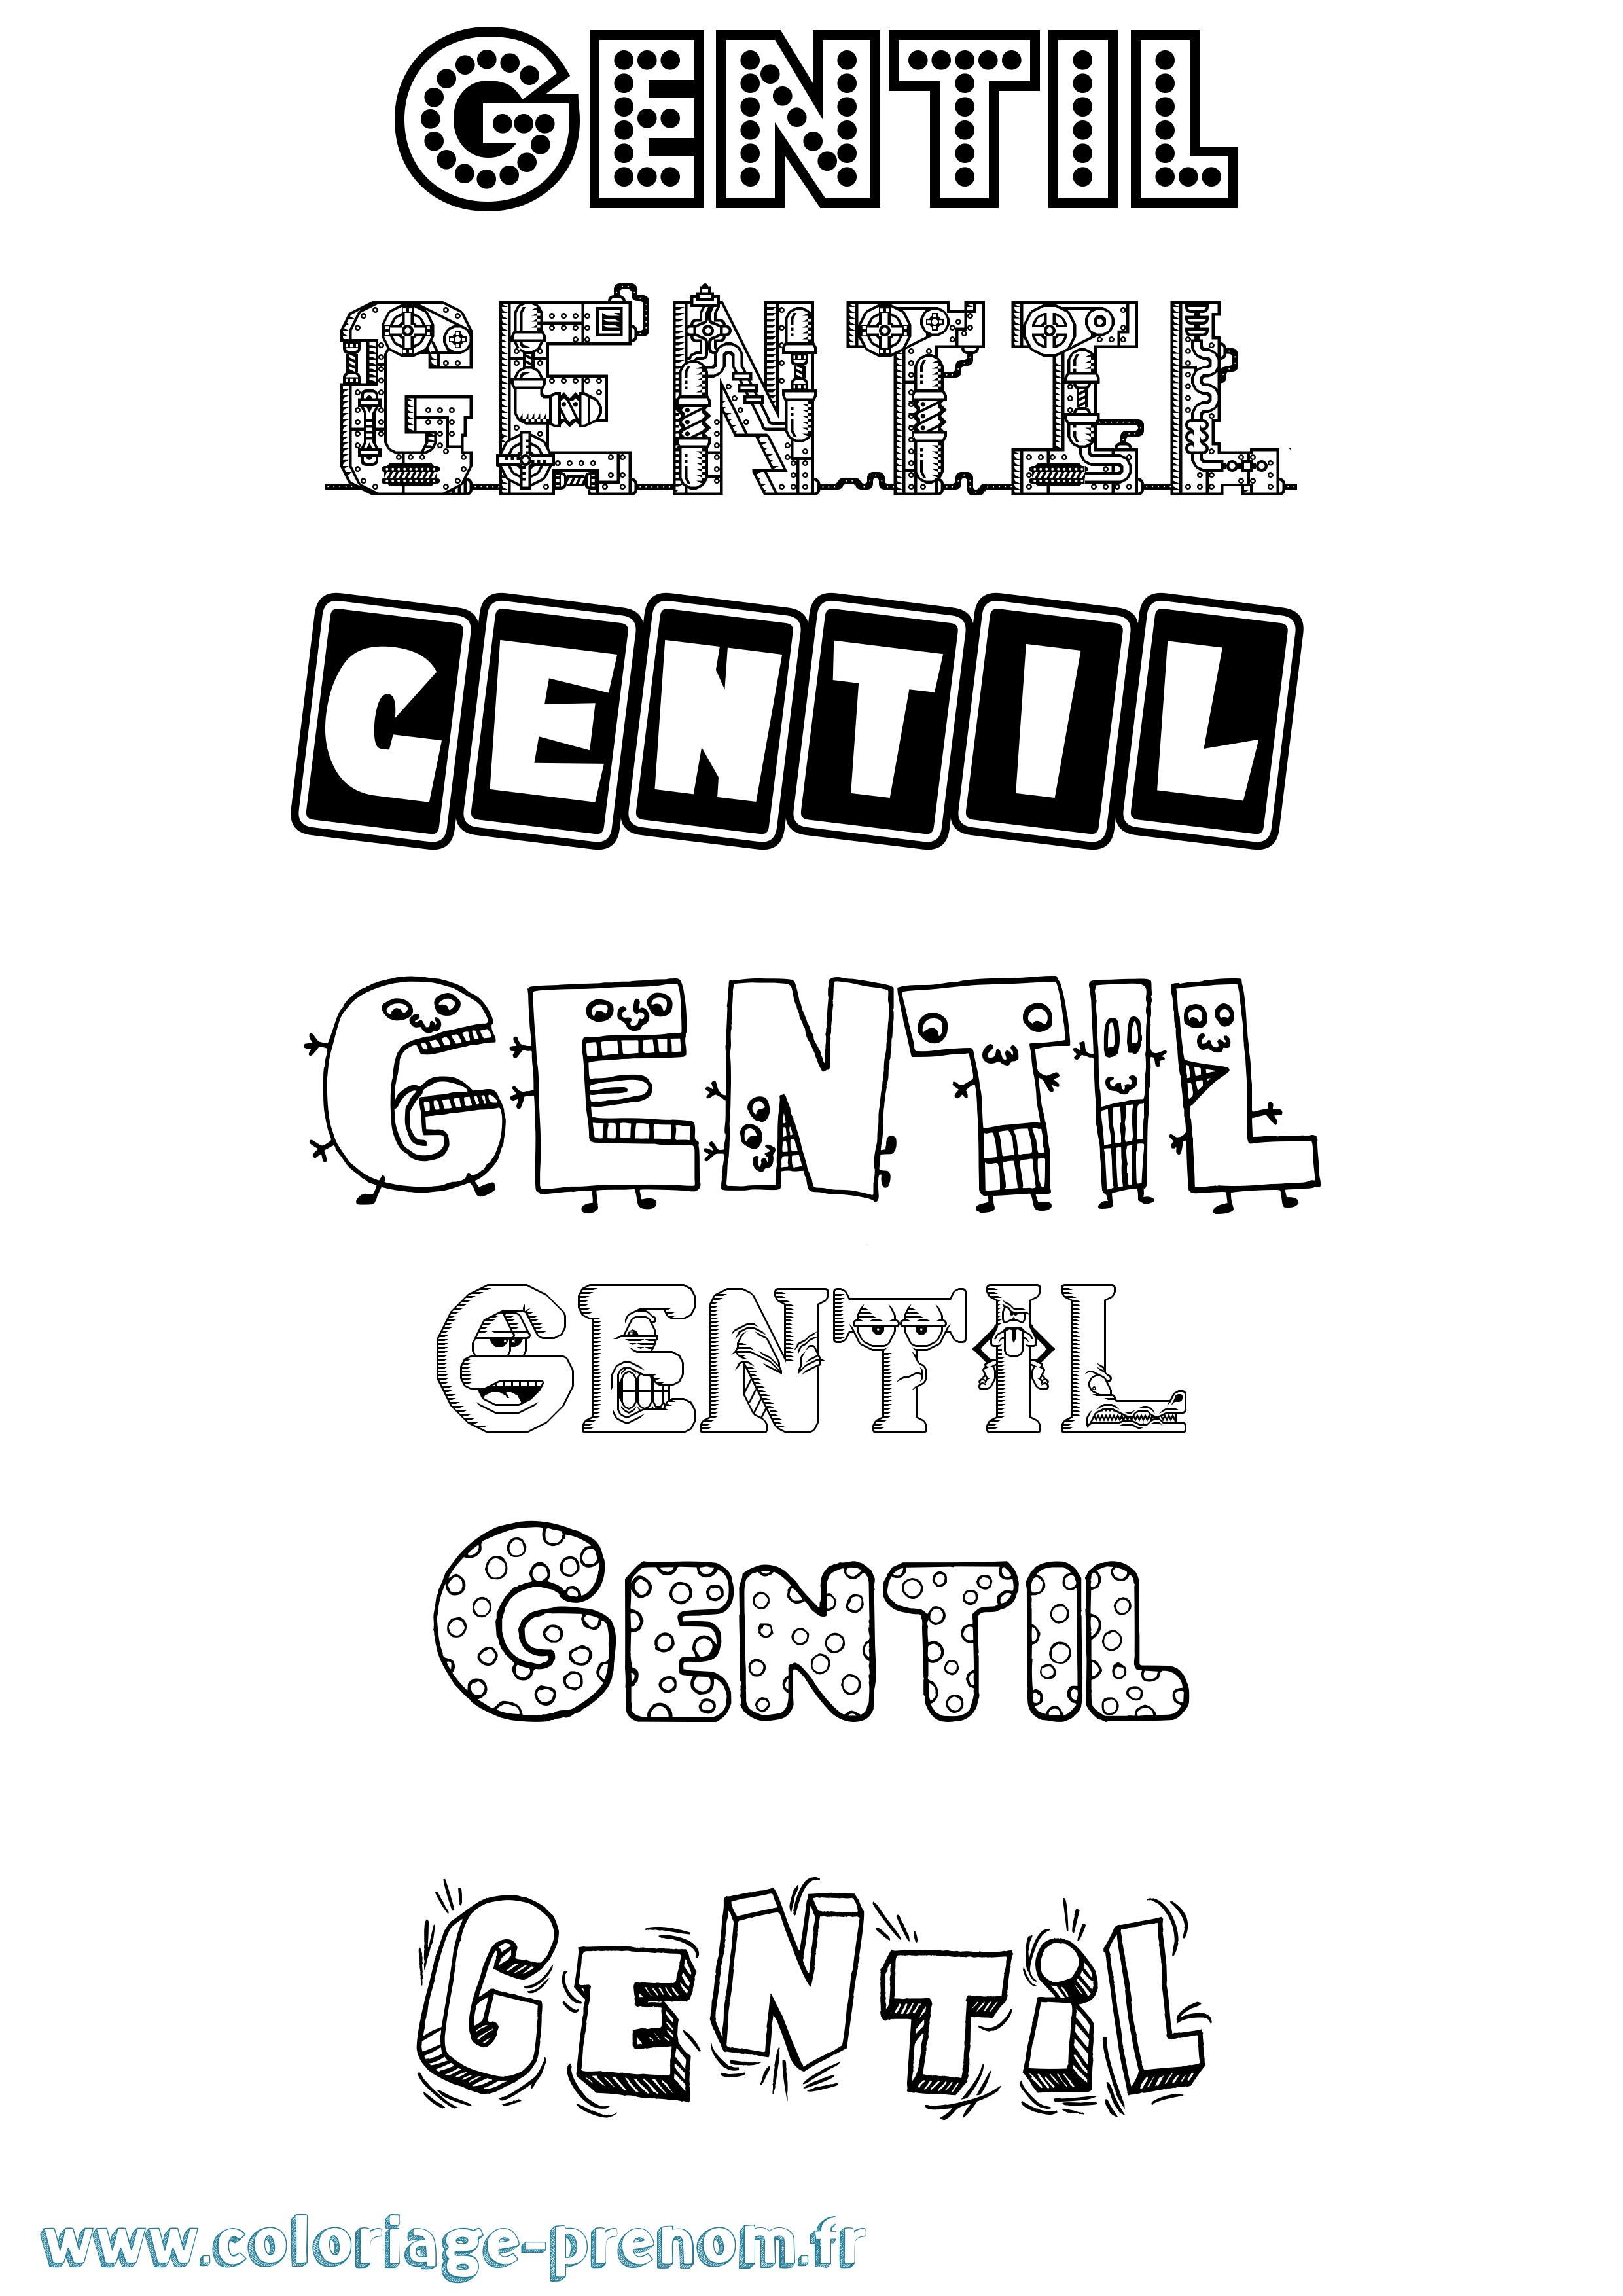 Coloriage prénom Gentil Fun